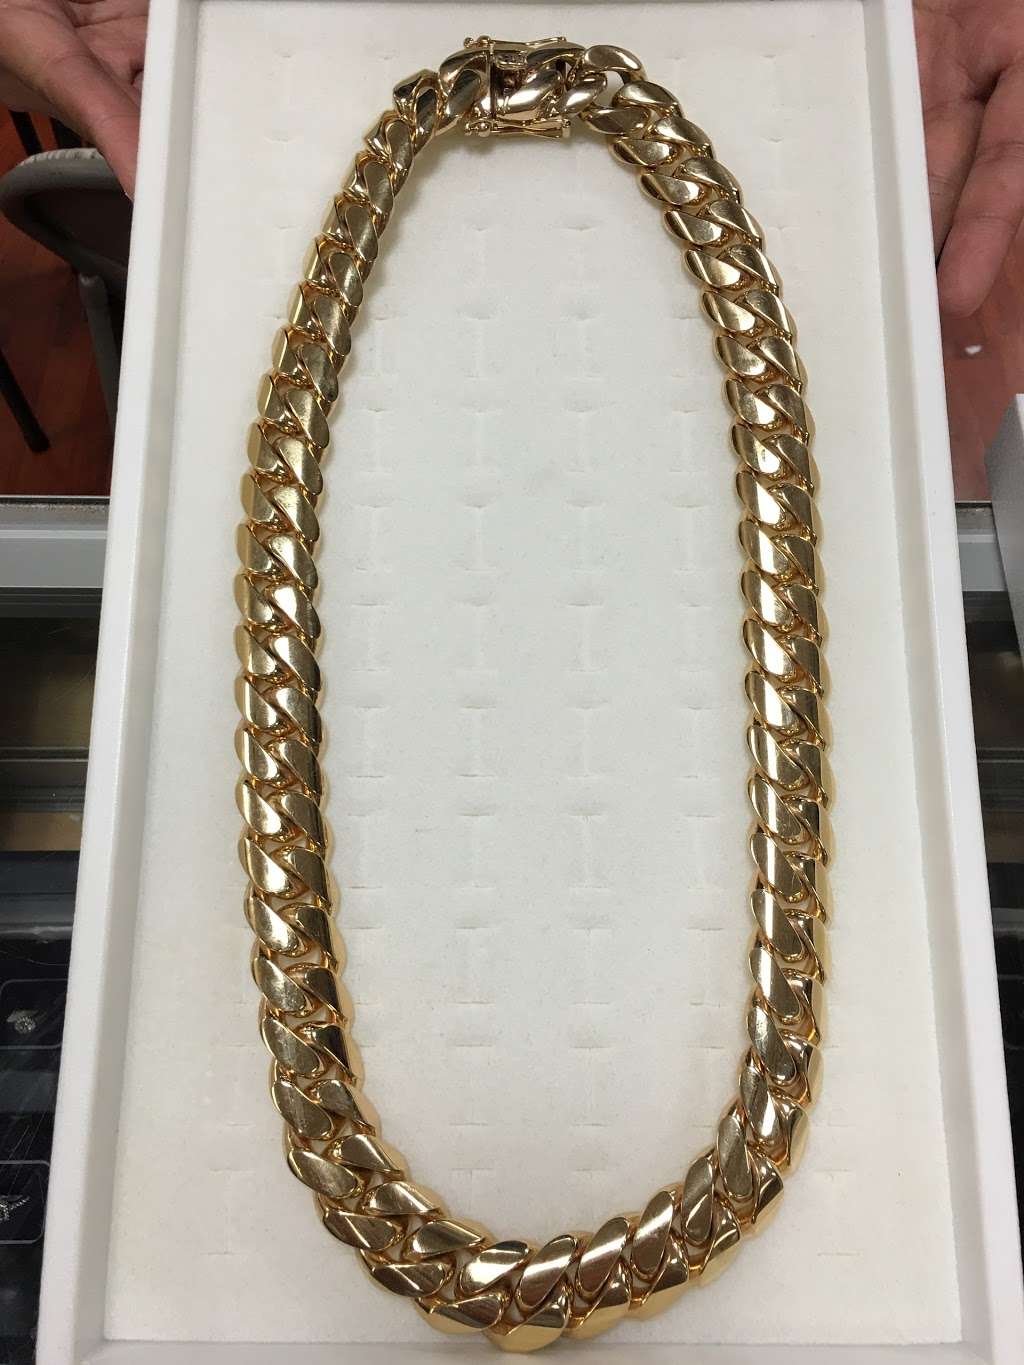 Ishtar Jewelry | 1265 Avocado Ave # 101, El Cajon, CA 92020, USA | Phone: (619) 401-1100